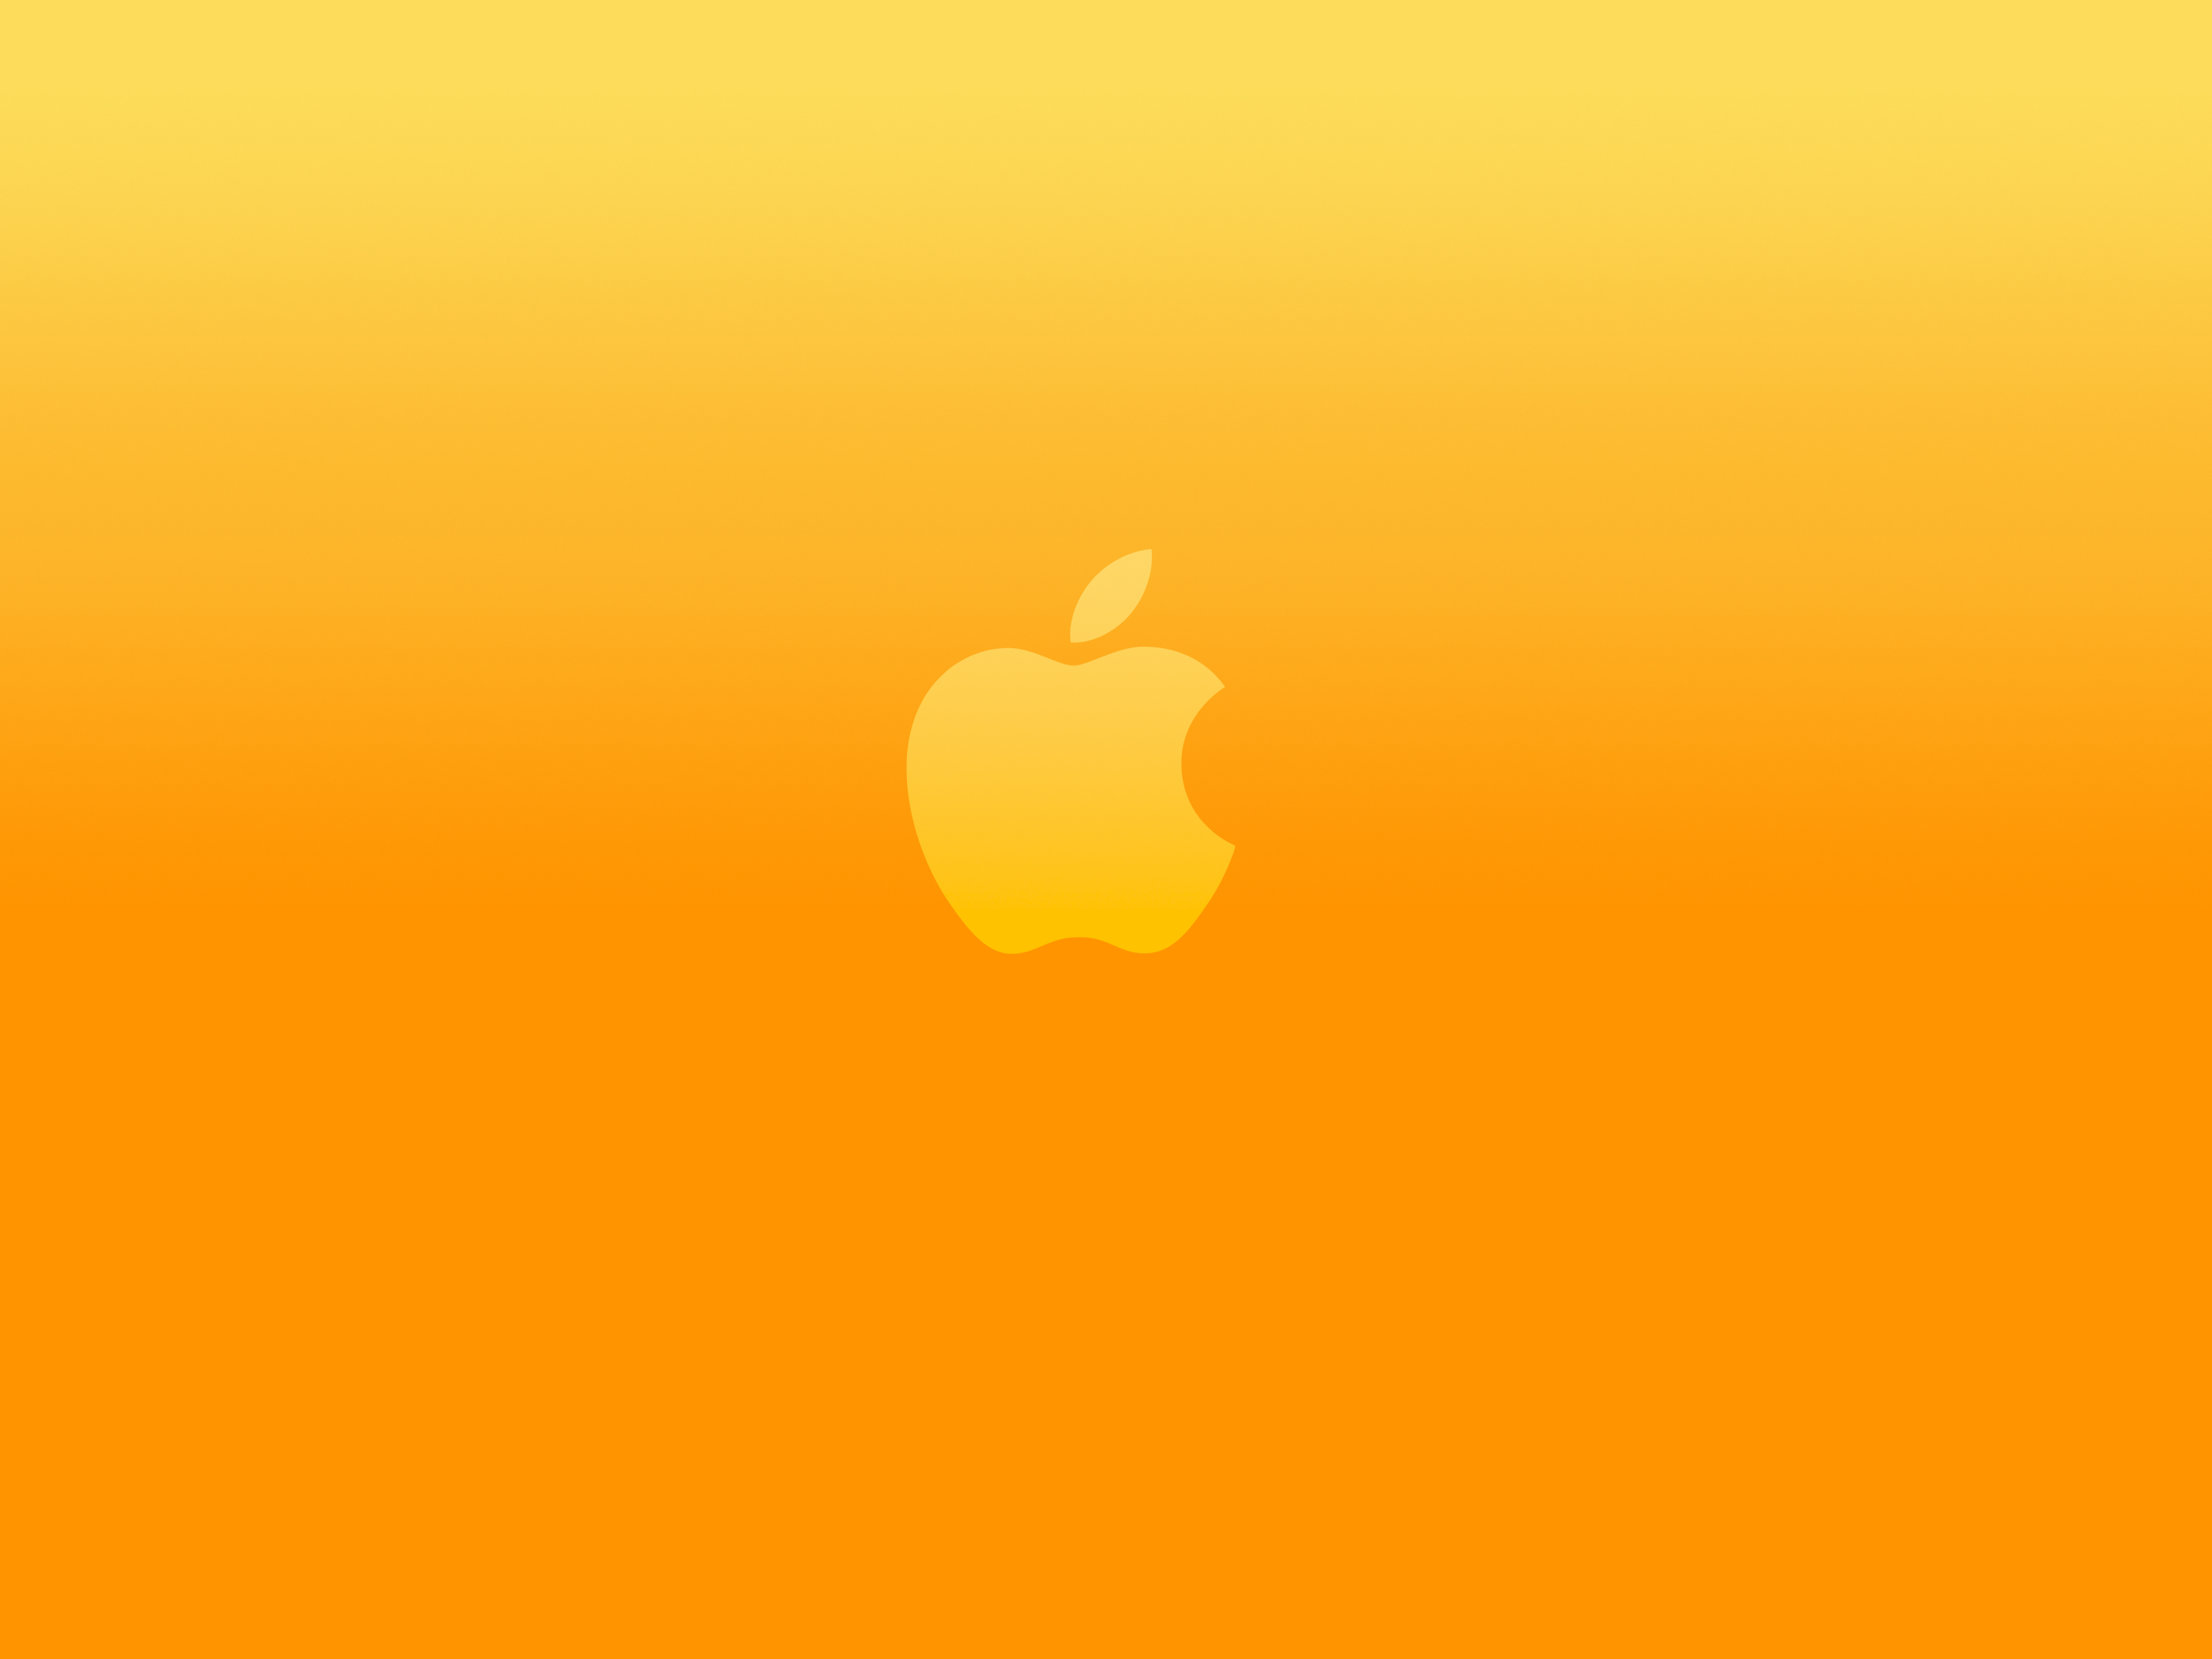 20 hình nền logo Apple tuyệt vời | OSXDaily Bạn có yêu thích Apple? Vậy thì hãy xem 20 hình nền logo Apple tuyệt vời mà chúng tôi tập hợp được. Từ những hình ảnh đơn giản cho đến những thiết kế dòng chữ thông minh, hãy thưởng thức những mẫu hình nền mang tính nghệ thuật cao này.